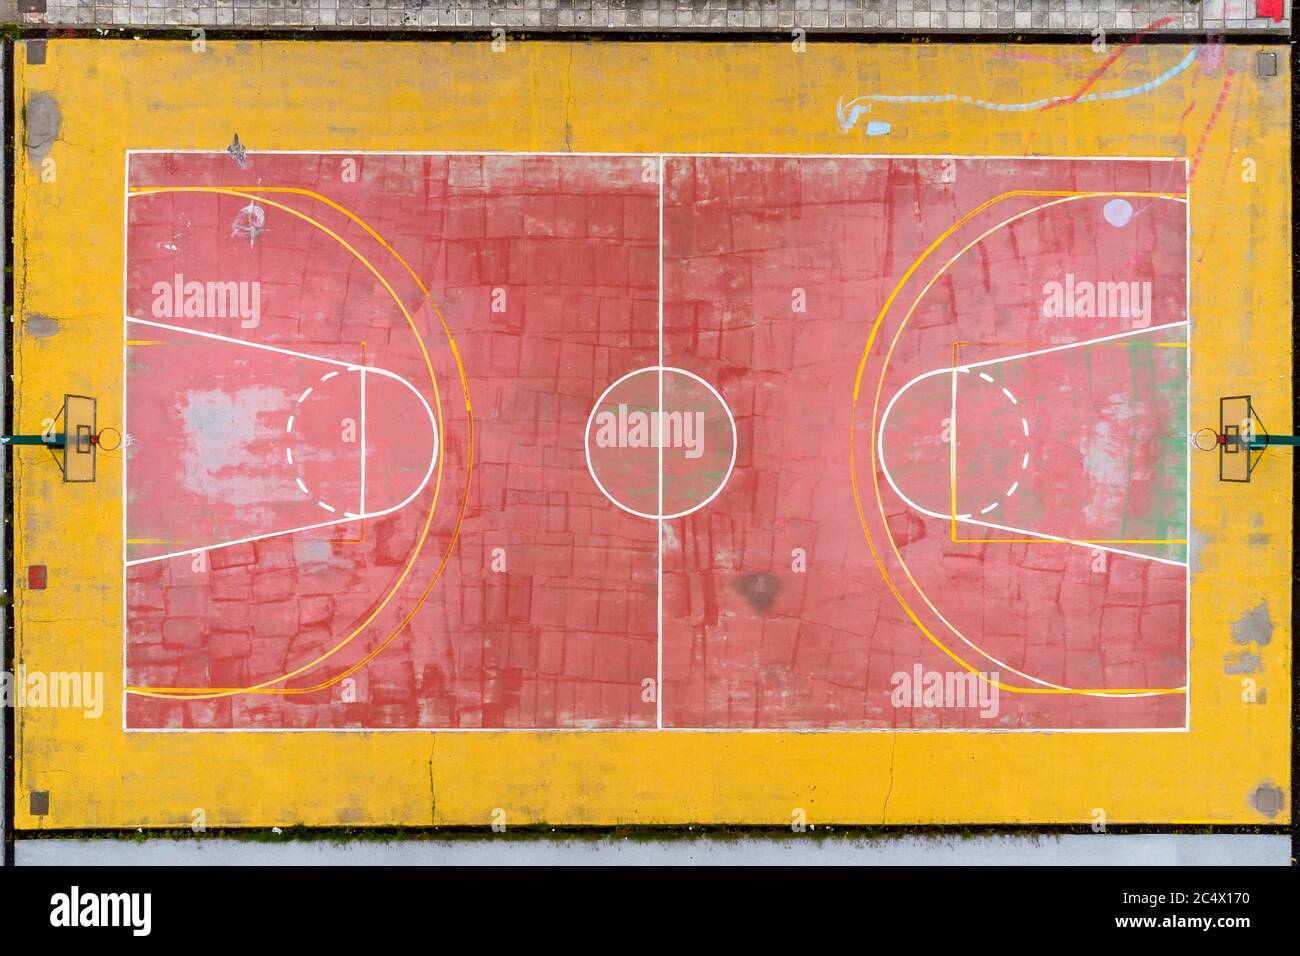 Campo da pallacanestro e vista dall'alto. Fotografia aerea Foto Stock